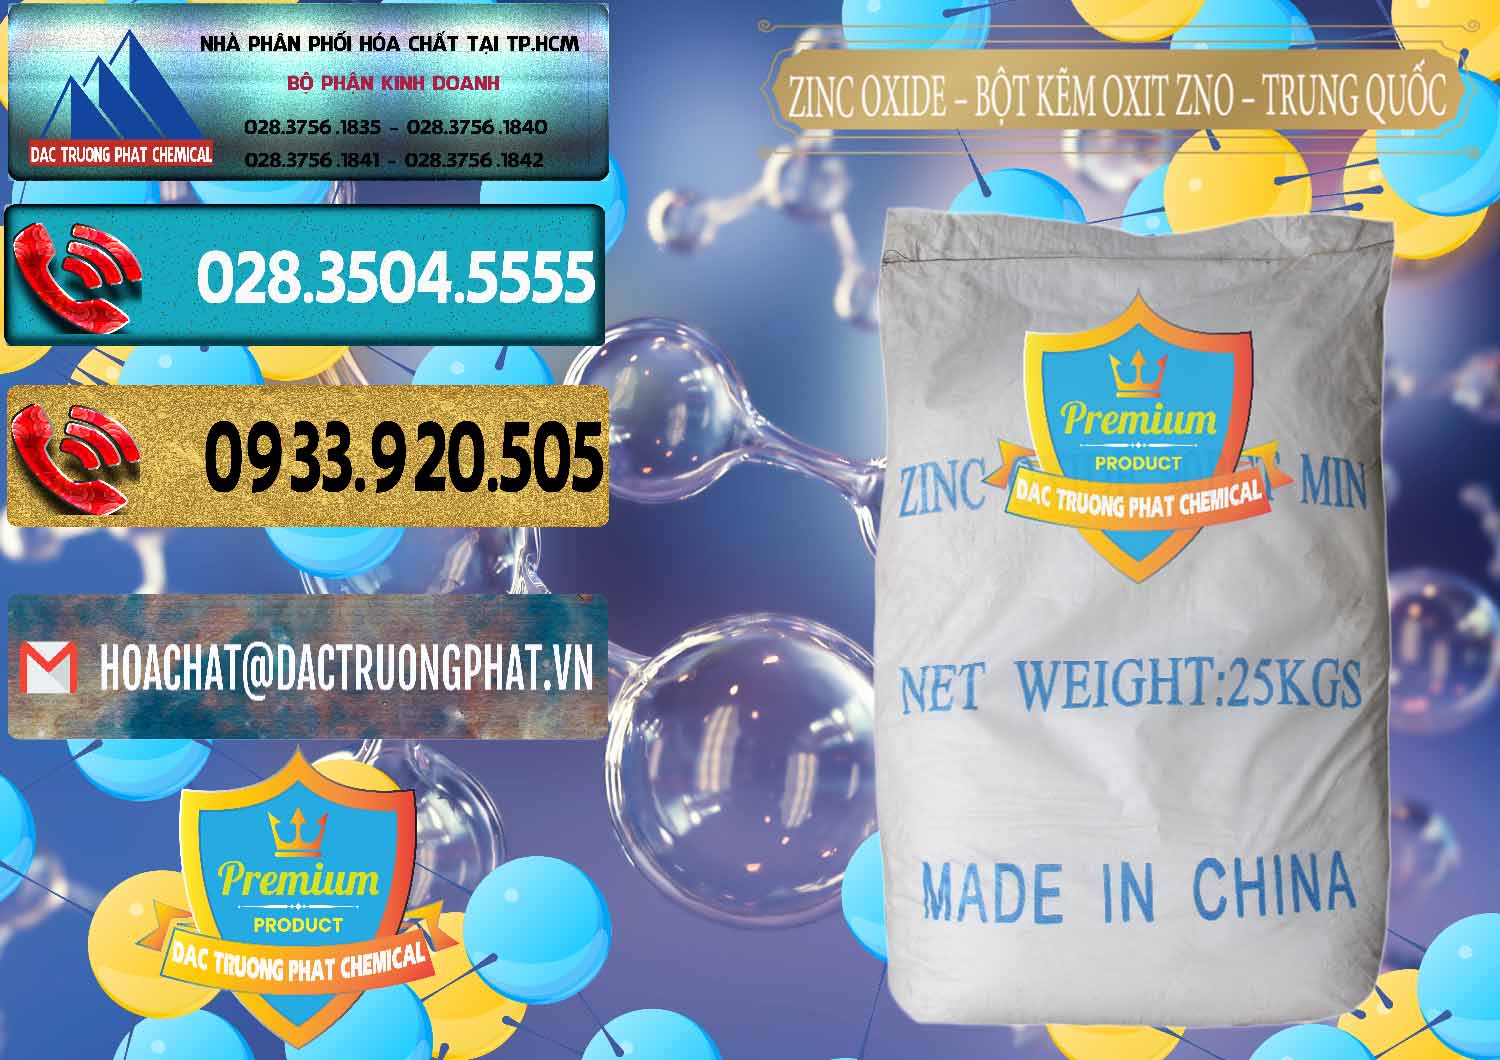 Cty chuyên cung ứng ( bán ) Zinc Oxide - Bột Kẽm Oxit ZNO Trung Quốc China - 0182 - Đơn vị cung cấp & nhập khẩu hóa chất tại TP.HCM - hoachatdetnhuom.com